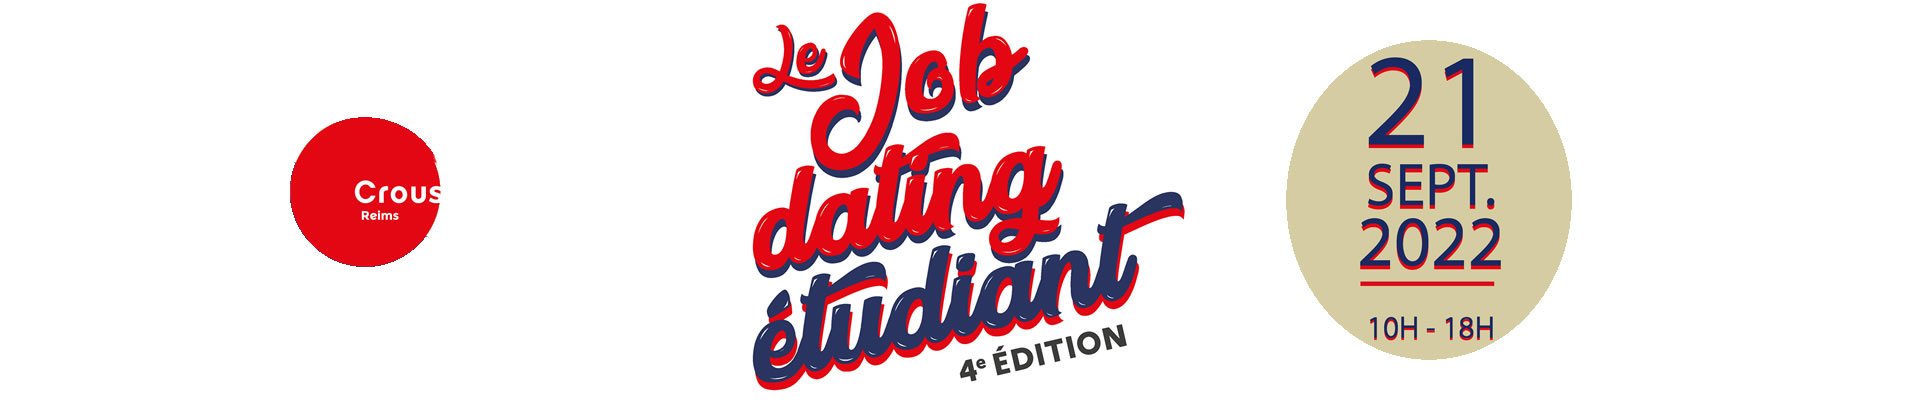 Job dating étudiant - Reims (51)